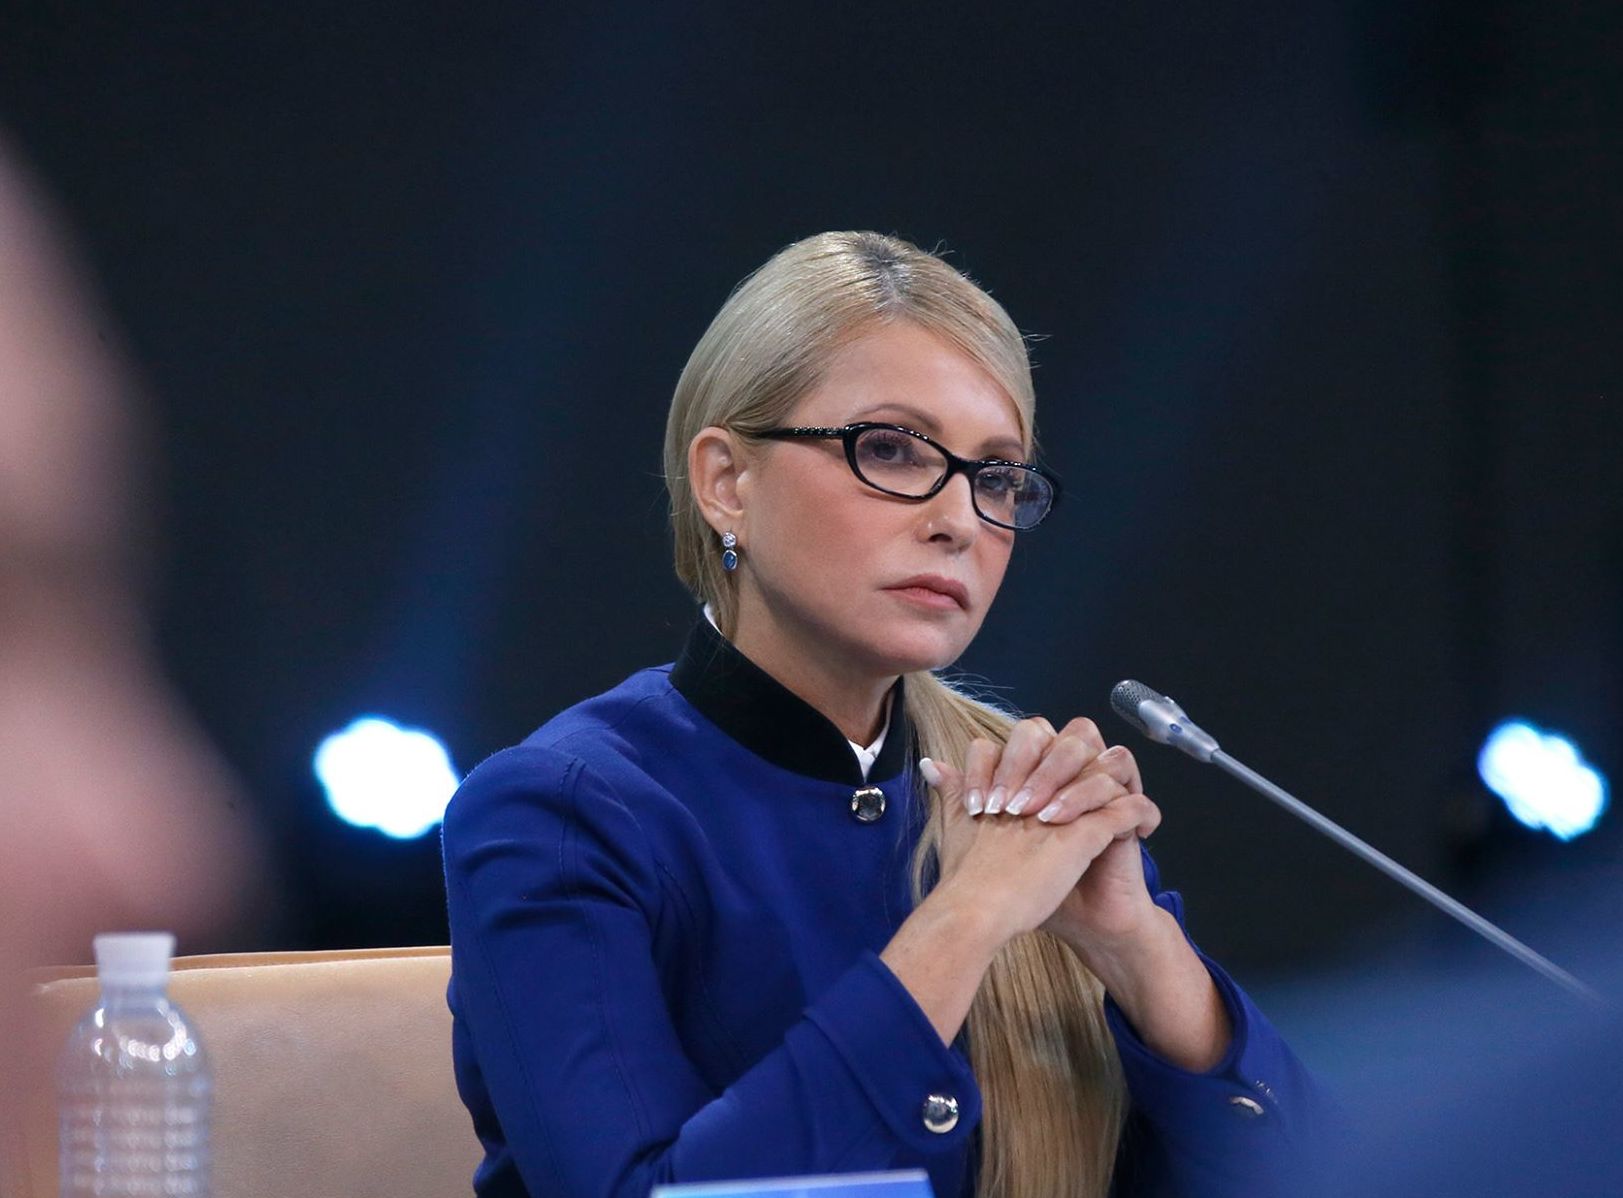 Тимошенко хотела "нажухать" украинцев. Показали ее тайный список будущих депутатов. За болванов людей считает?